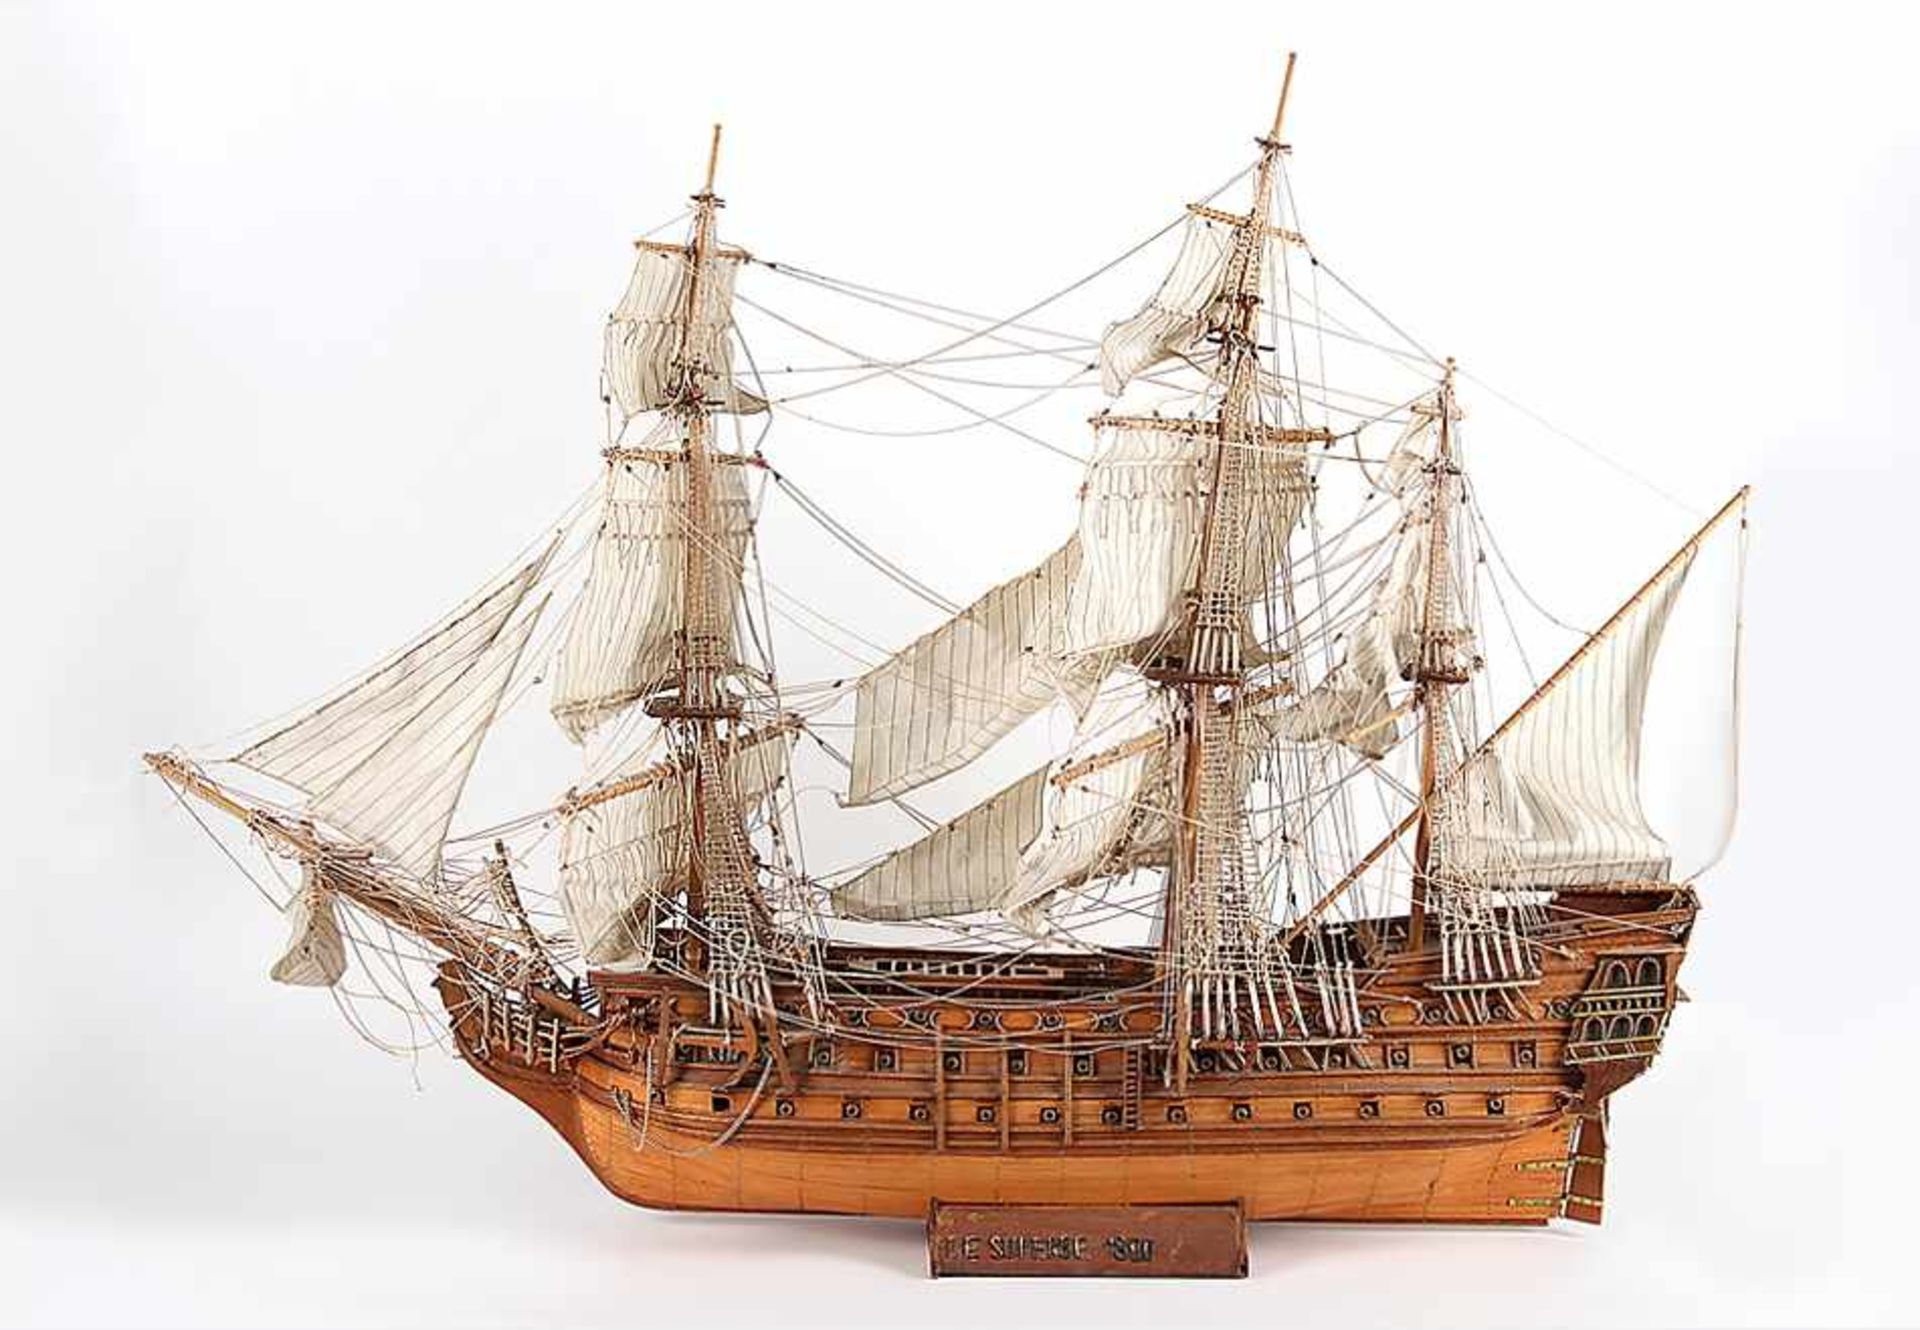 ModellschiffLinienschiff "Le Superbe". Sehr fein detaillierter Vollholzaufbau mit Messingteilen,